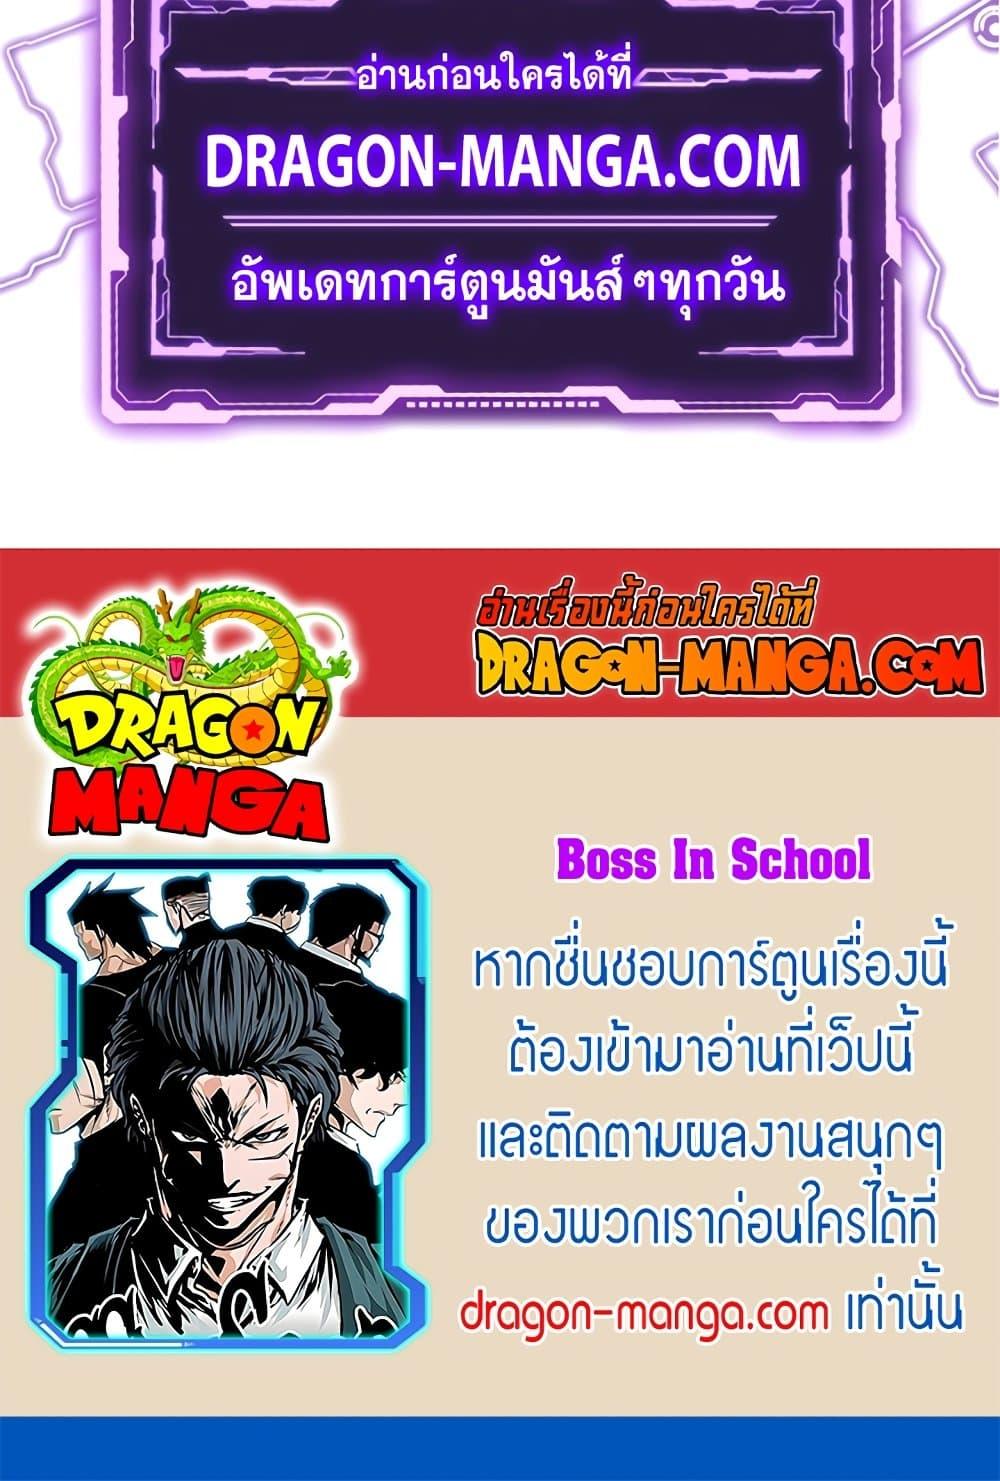 Boss in School 48 60